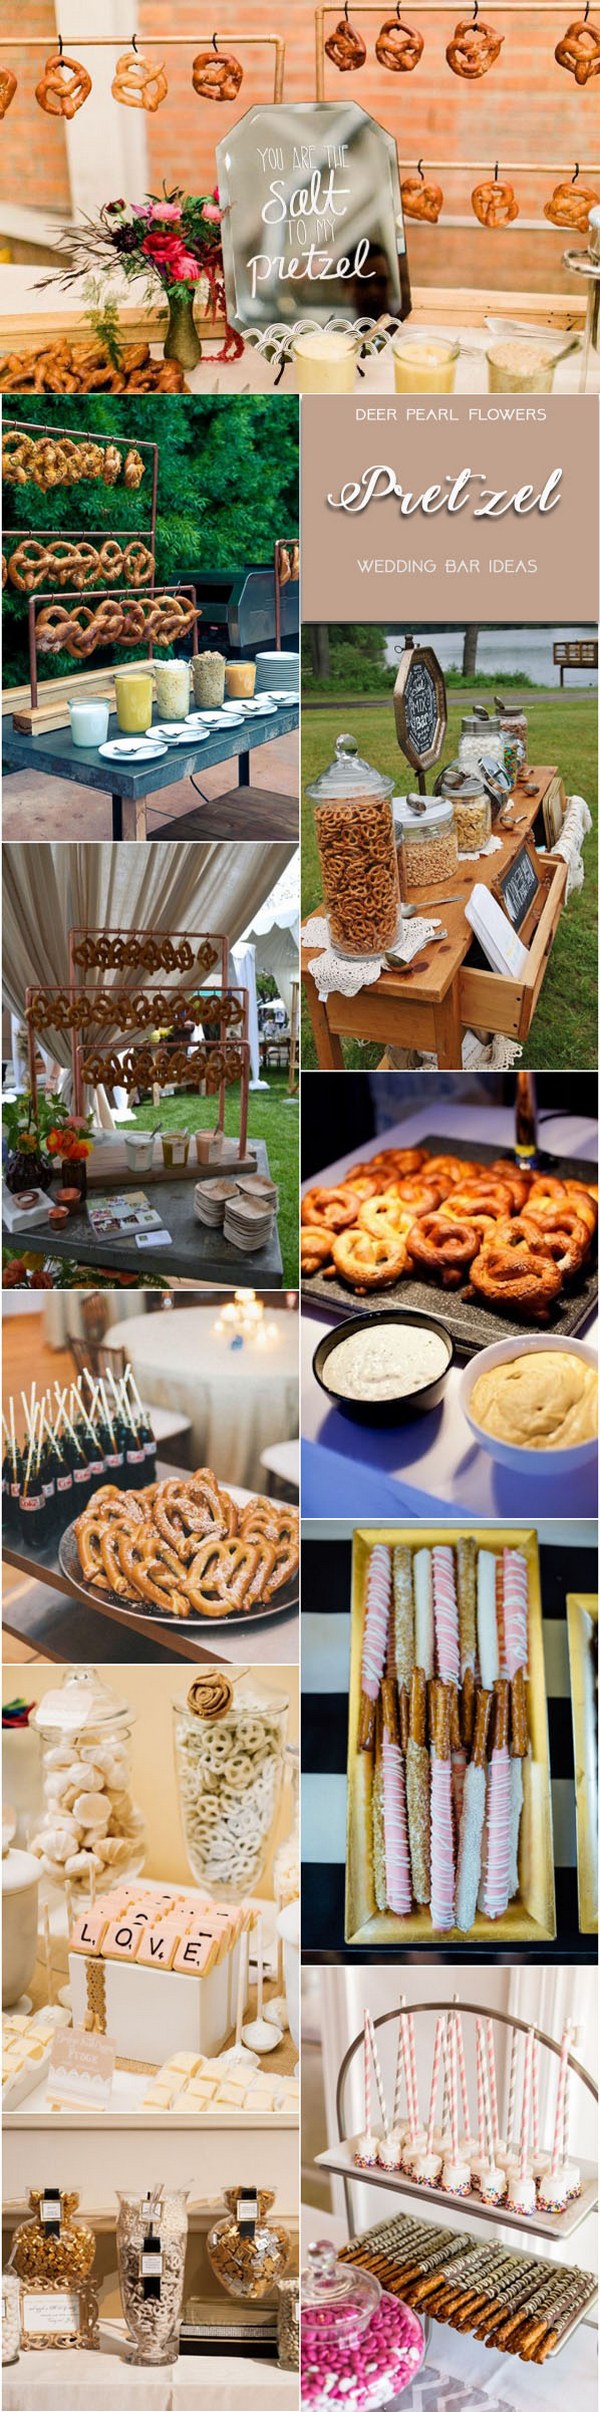 Rustic pretzel wedding dessert food bar for wedding reception